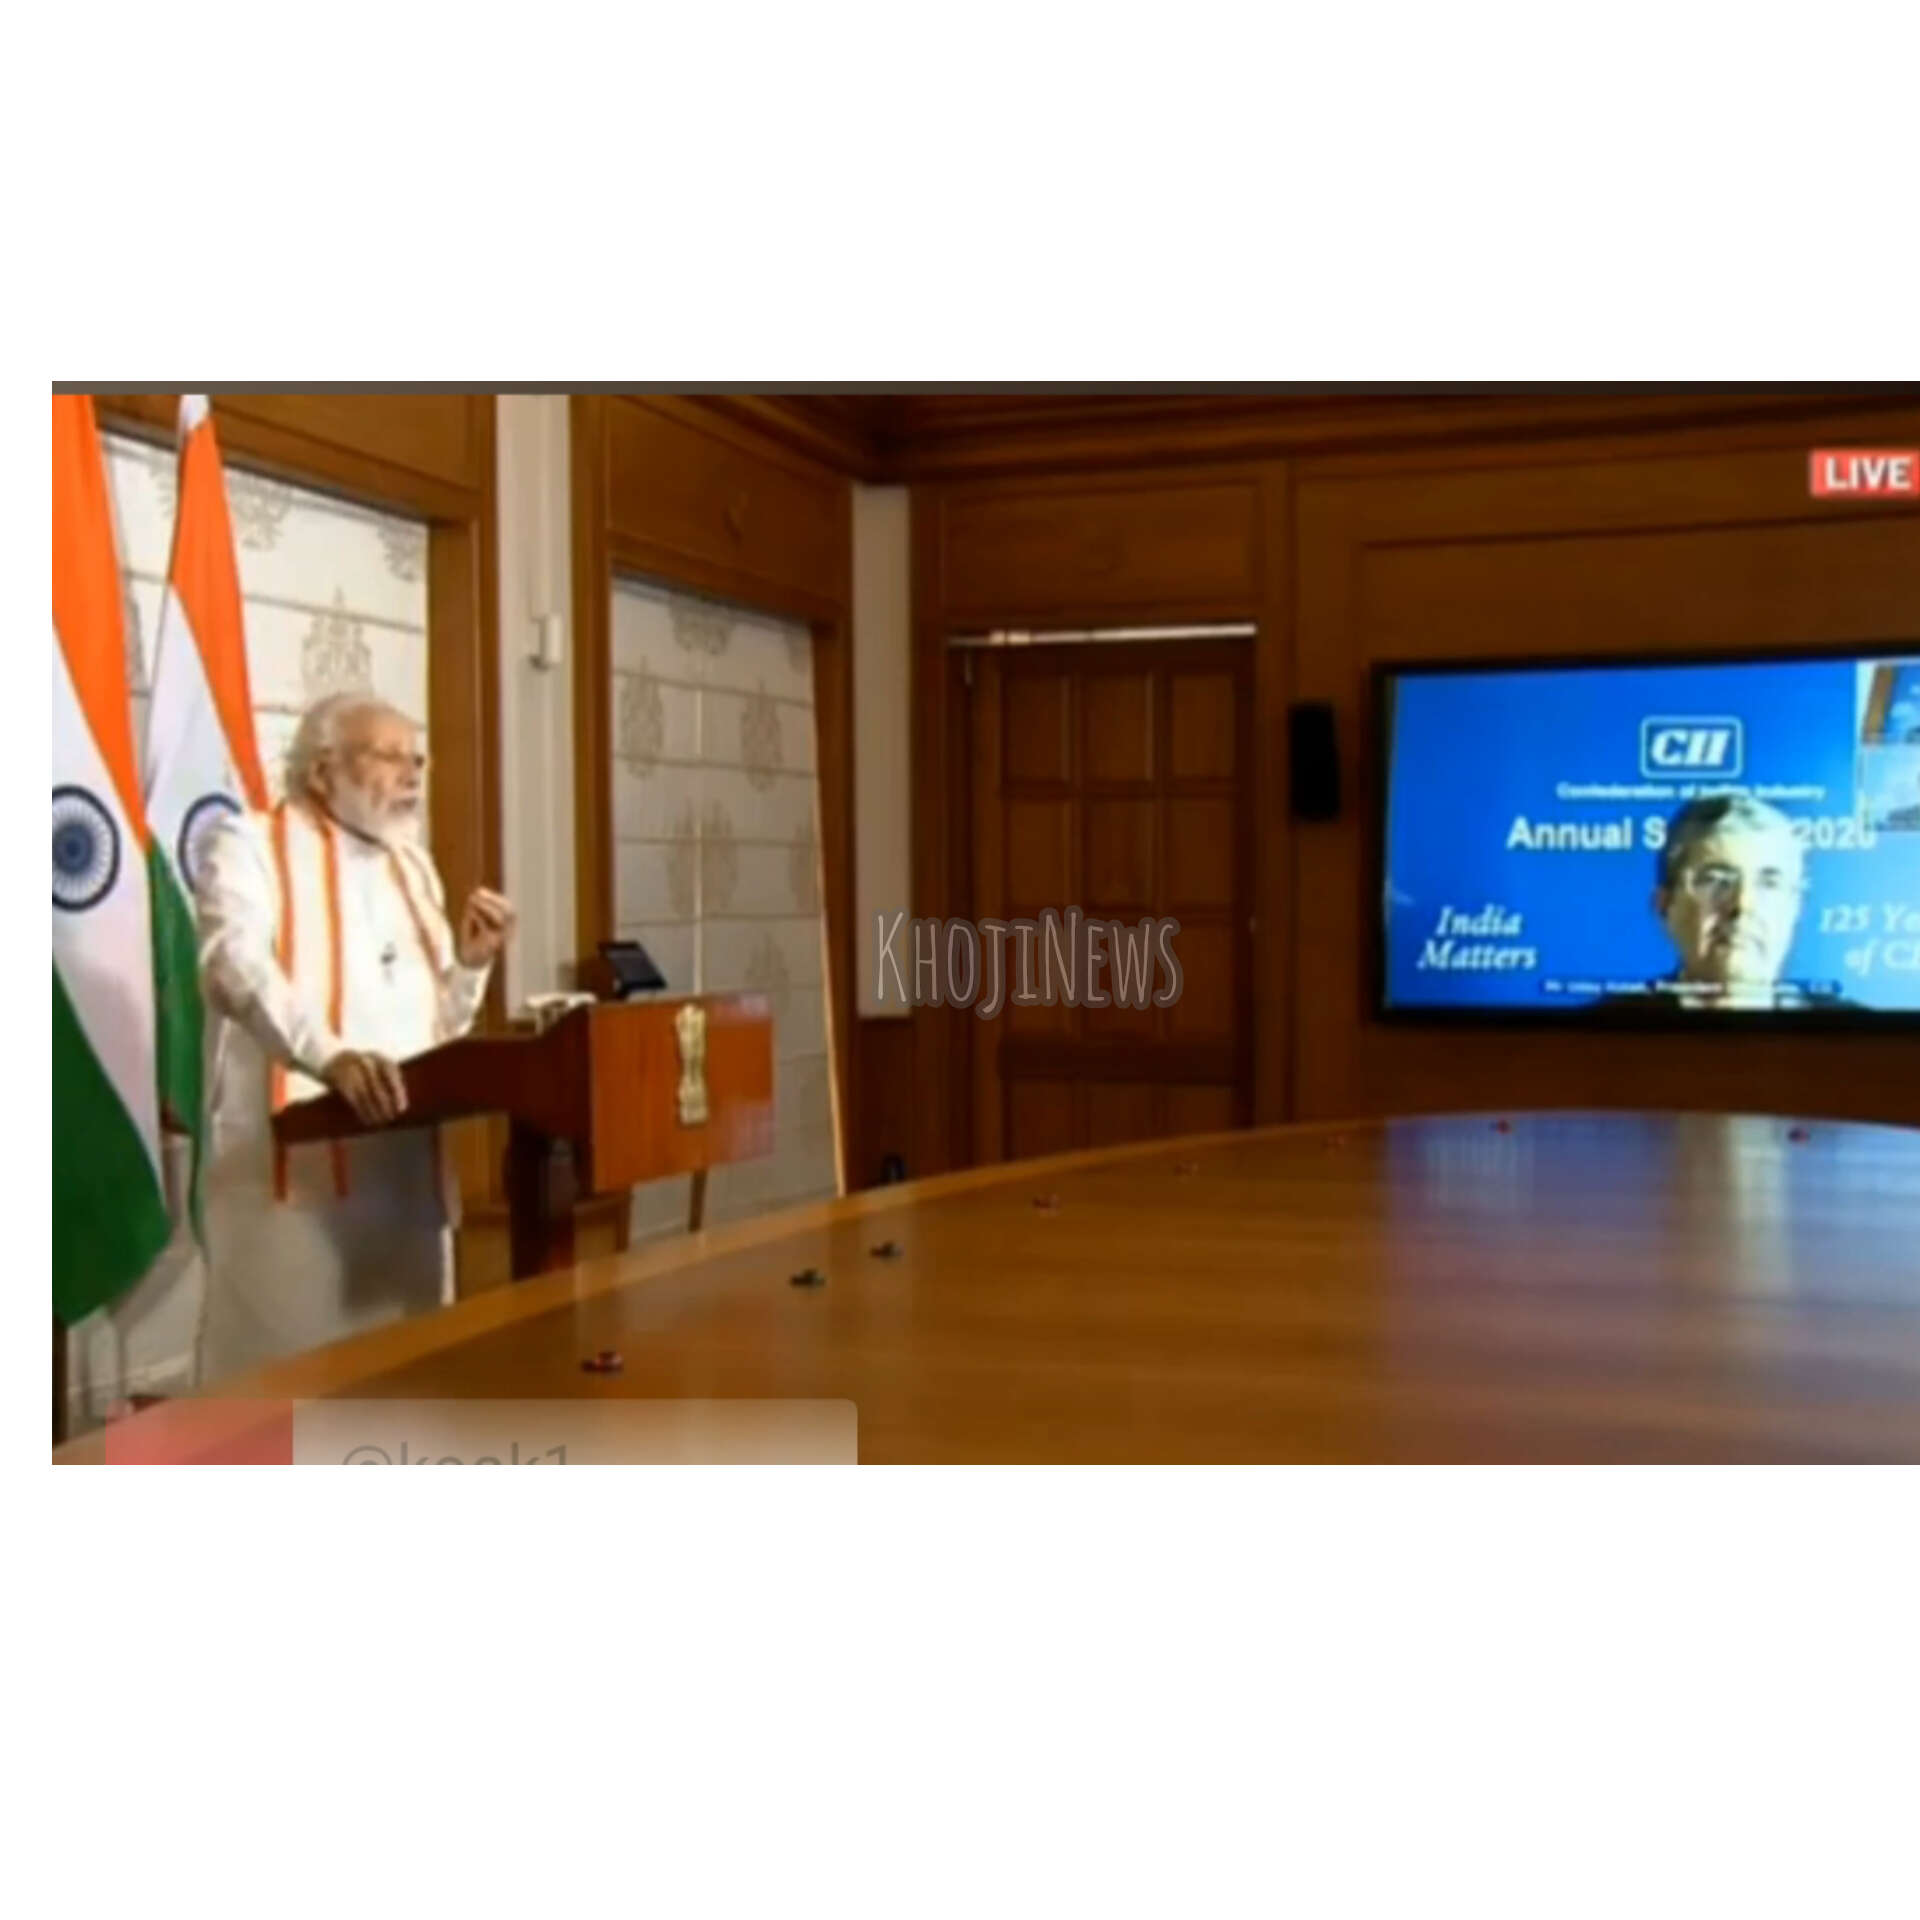 भारतीय उद्योग परिसंघ के 125 साल पूरे होने पर प्रधानमंत्री का संबोधन